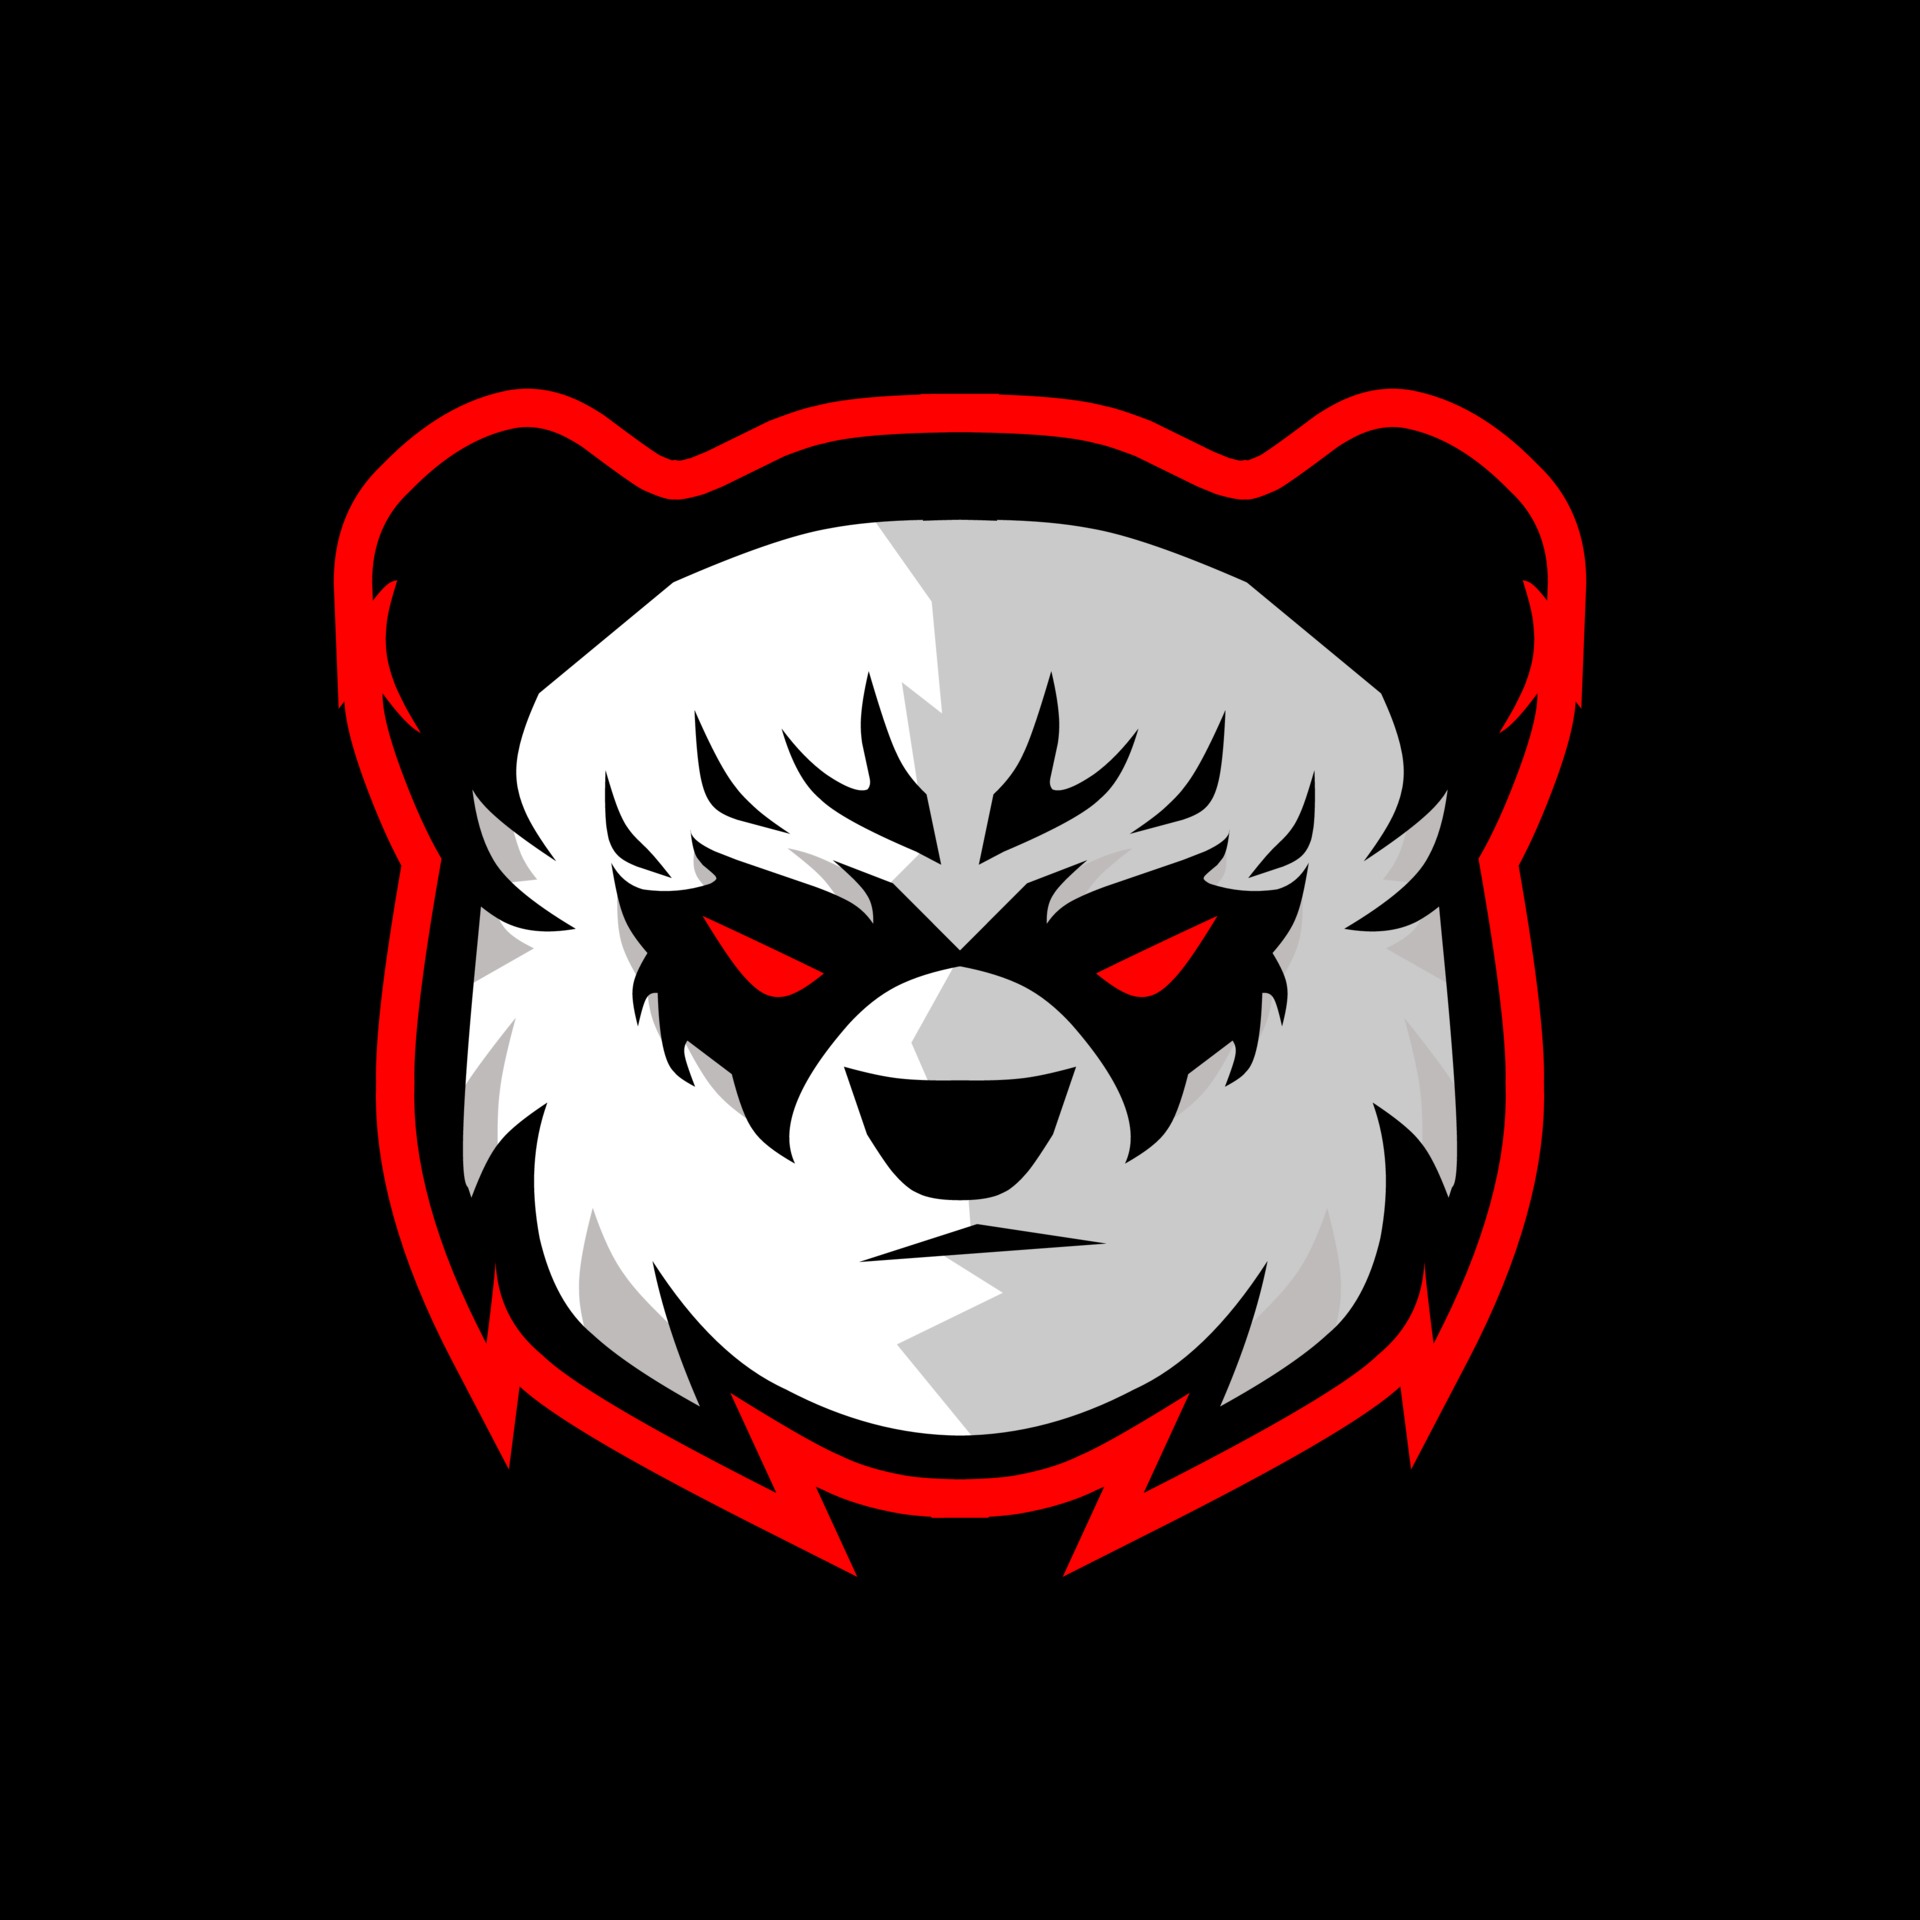 panda-mascot-logo-free-vector.jpg